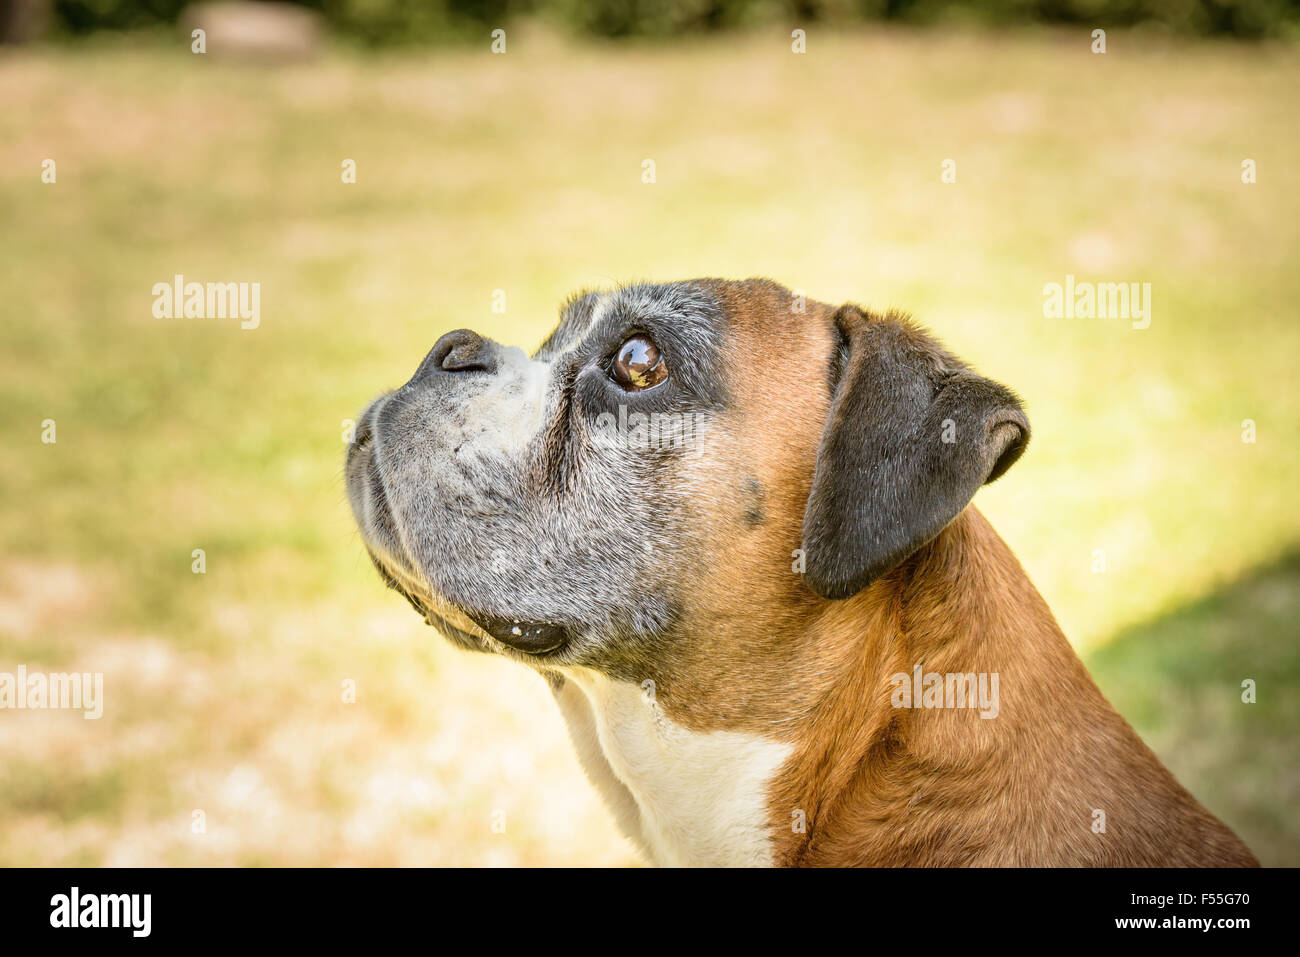 Nice portrait of a Deutscher boxer dog Stock Photo